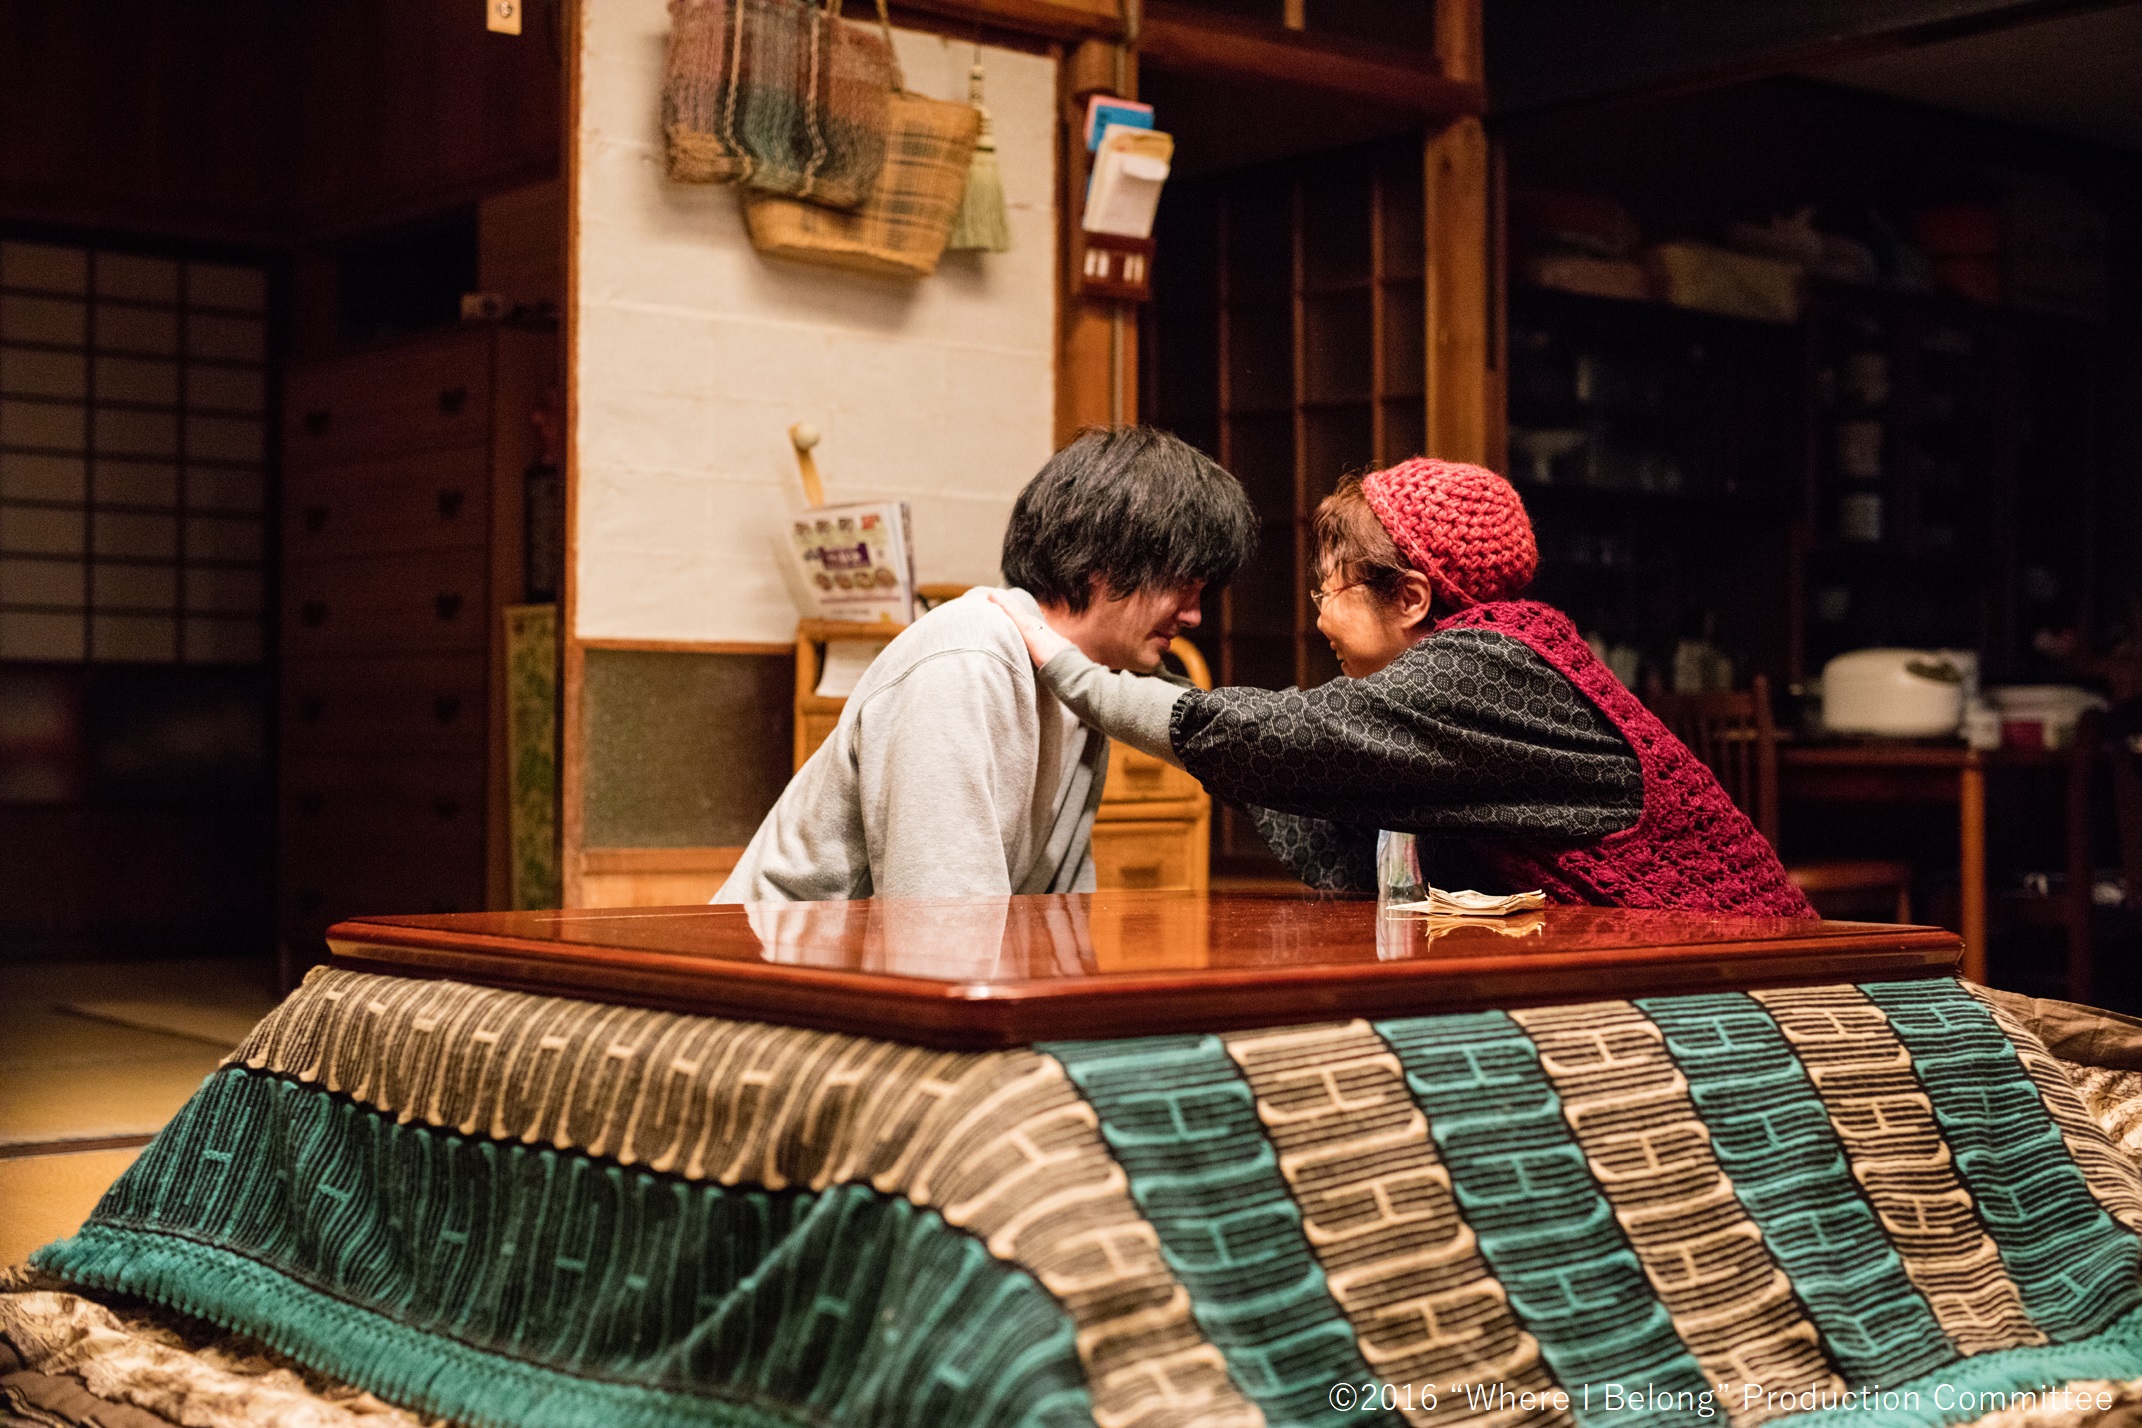 Eine alte Frau und ein jüngerer Mann sitzen hinter einem tiefgelegten Tisch auf dem Boden einer japanischen Wohnung. Sie sehen sich an und sie legt ihm die Hände auf die Schultern.